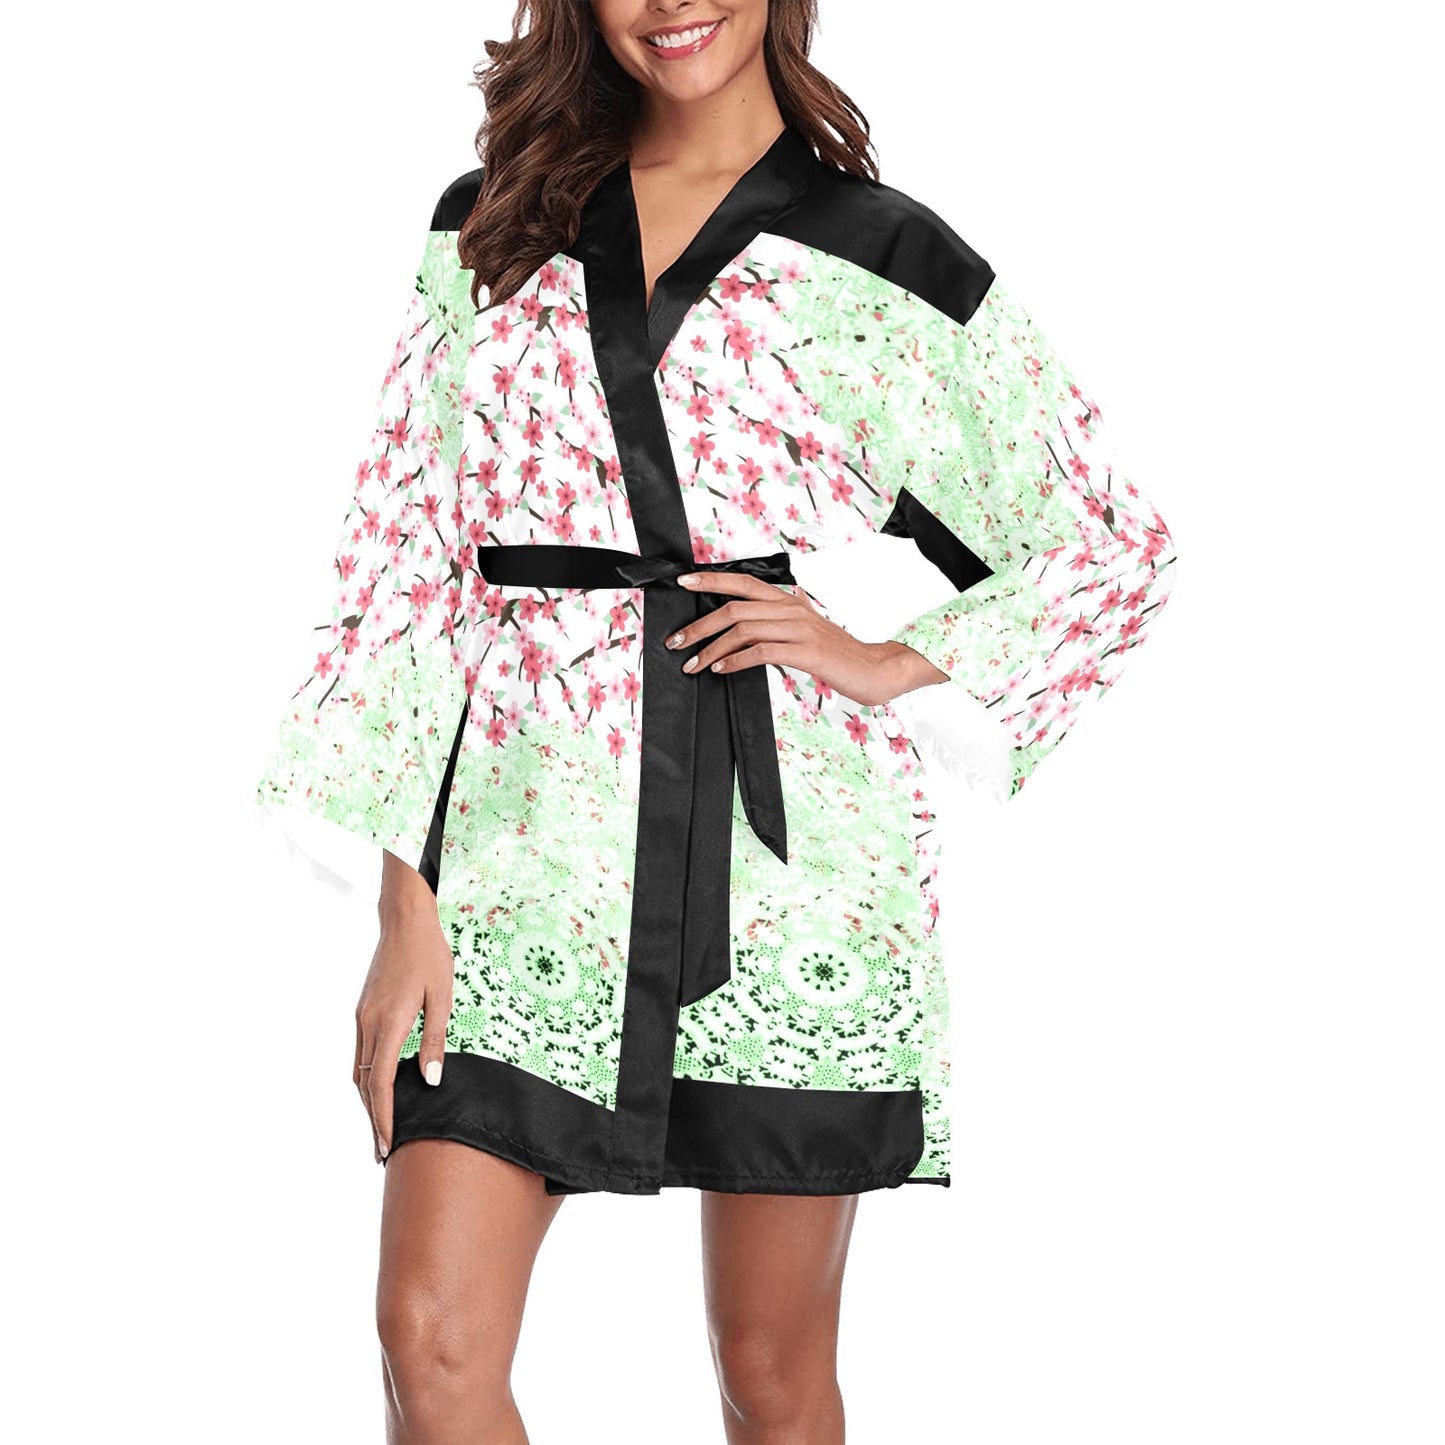 Victorian Lace Kimono Robe, Black or White Trim, Sizes XS to 2XL, Design 10